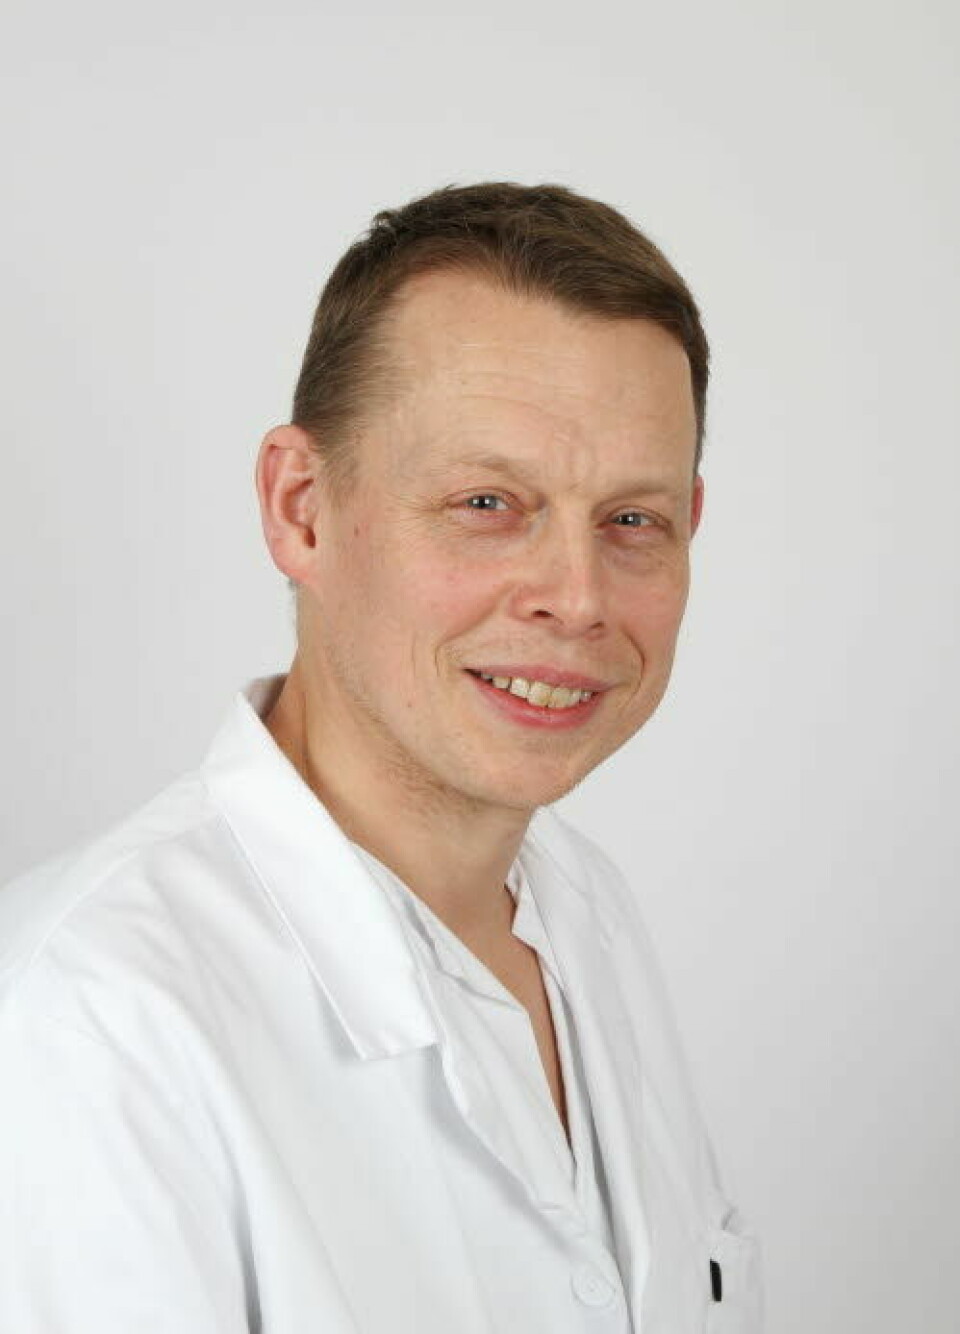 Viseadministrerende direktør Tom Christian Martinsen.

            
                Foto: St. Olavs hospital